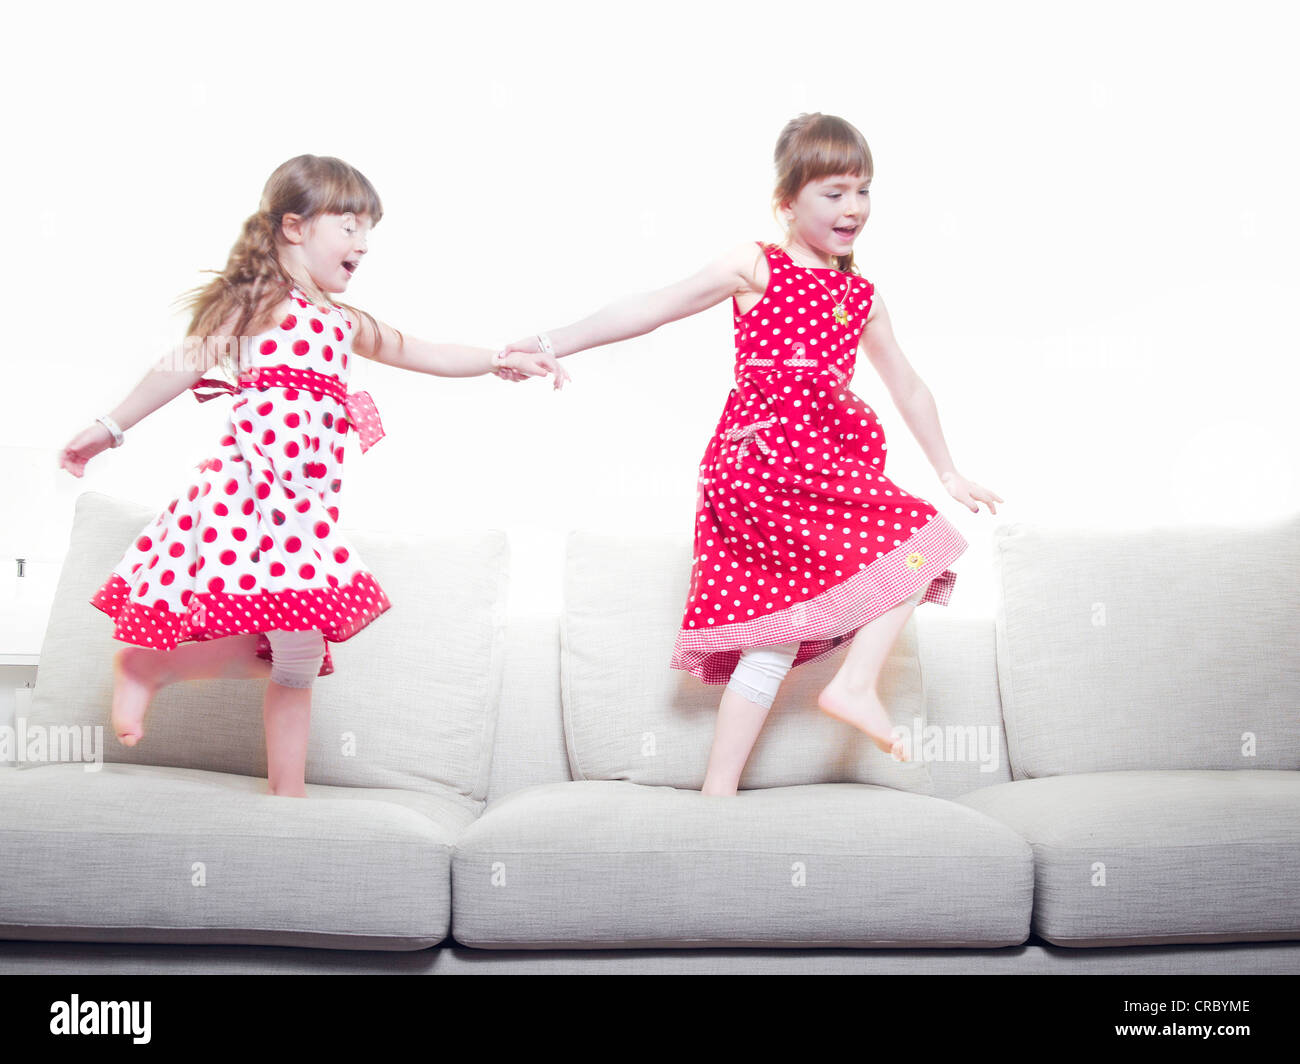 Les filles jouent ensemble sur canapé Banque D'Images